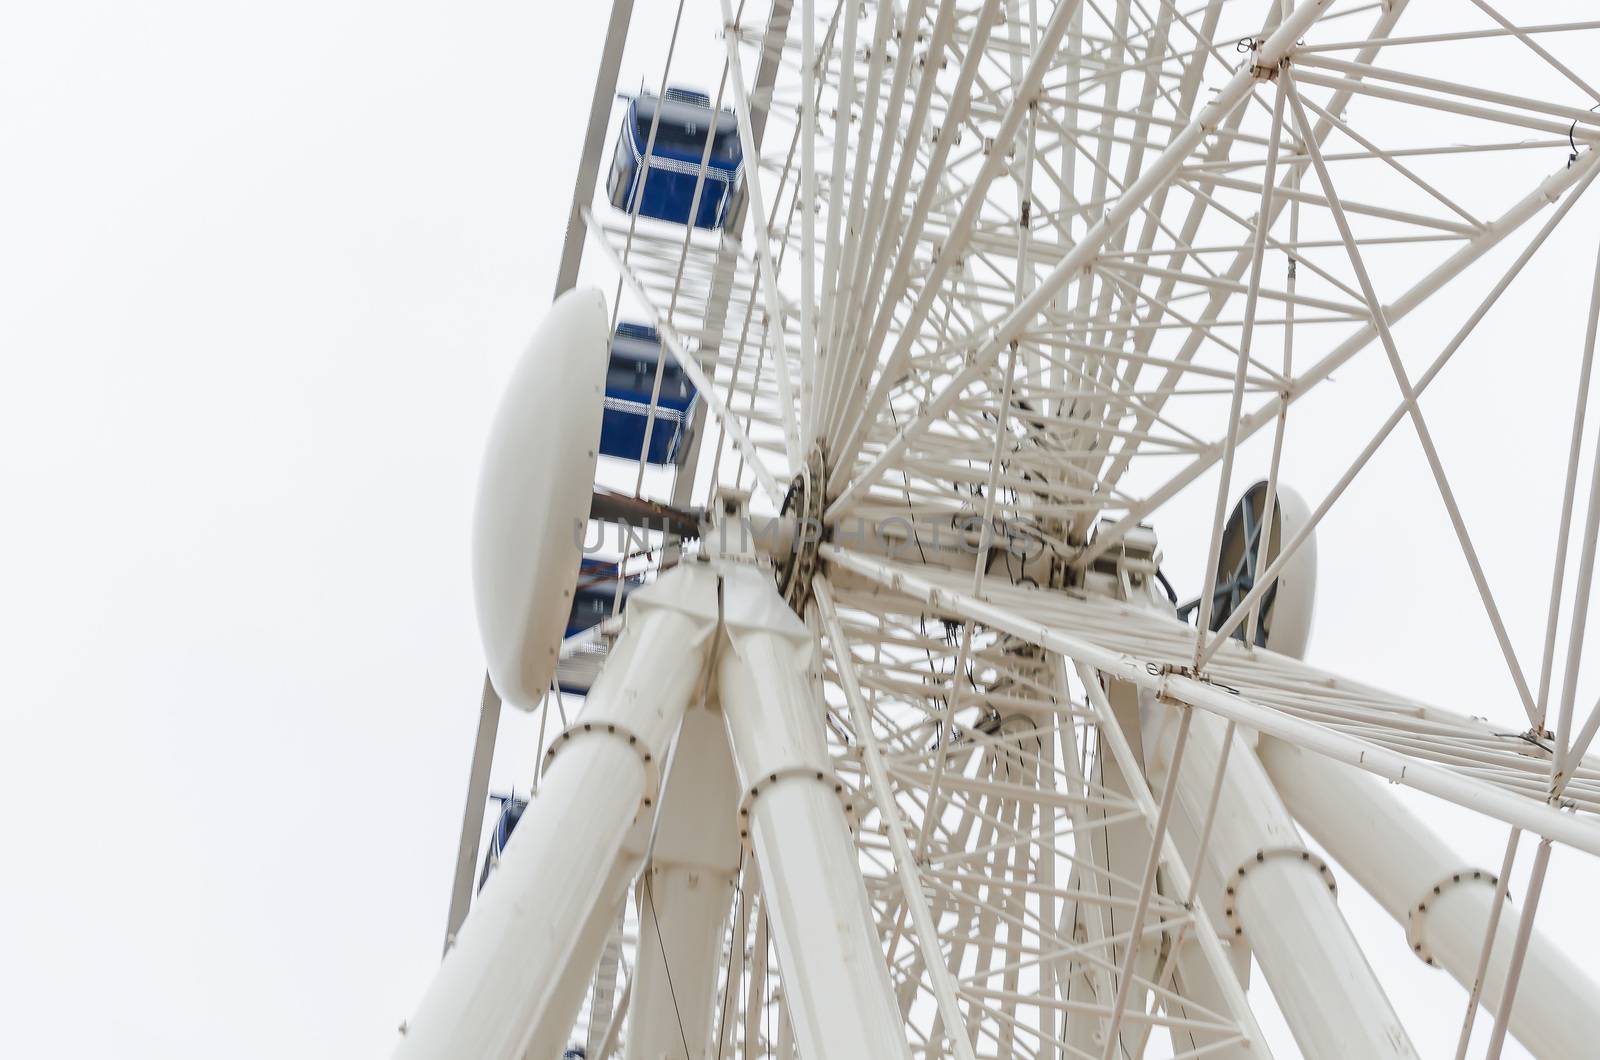 Ferris Wheel by JFsPic